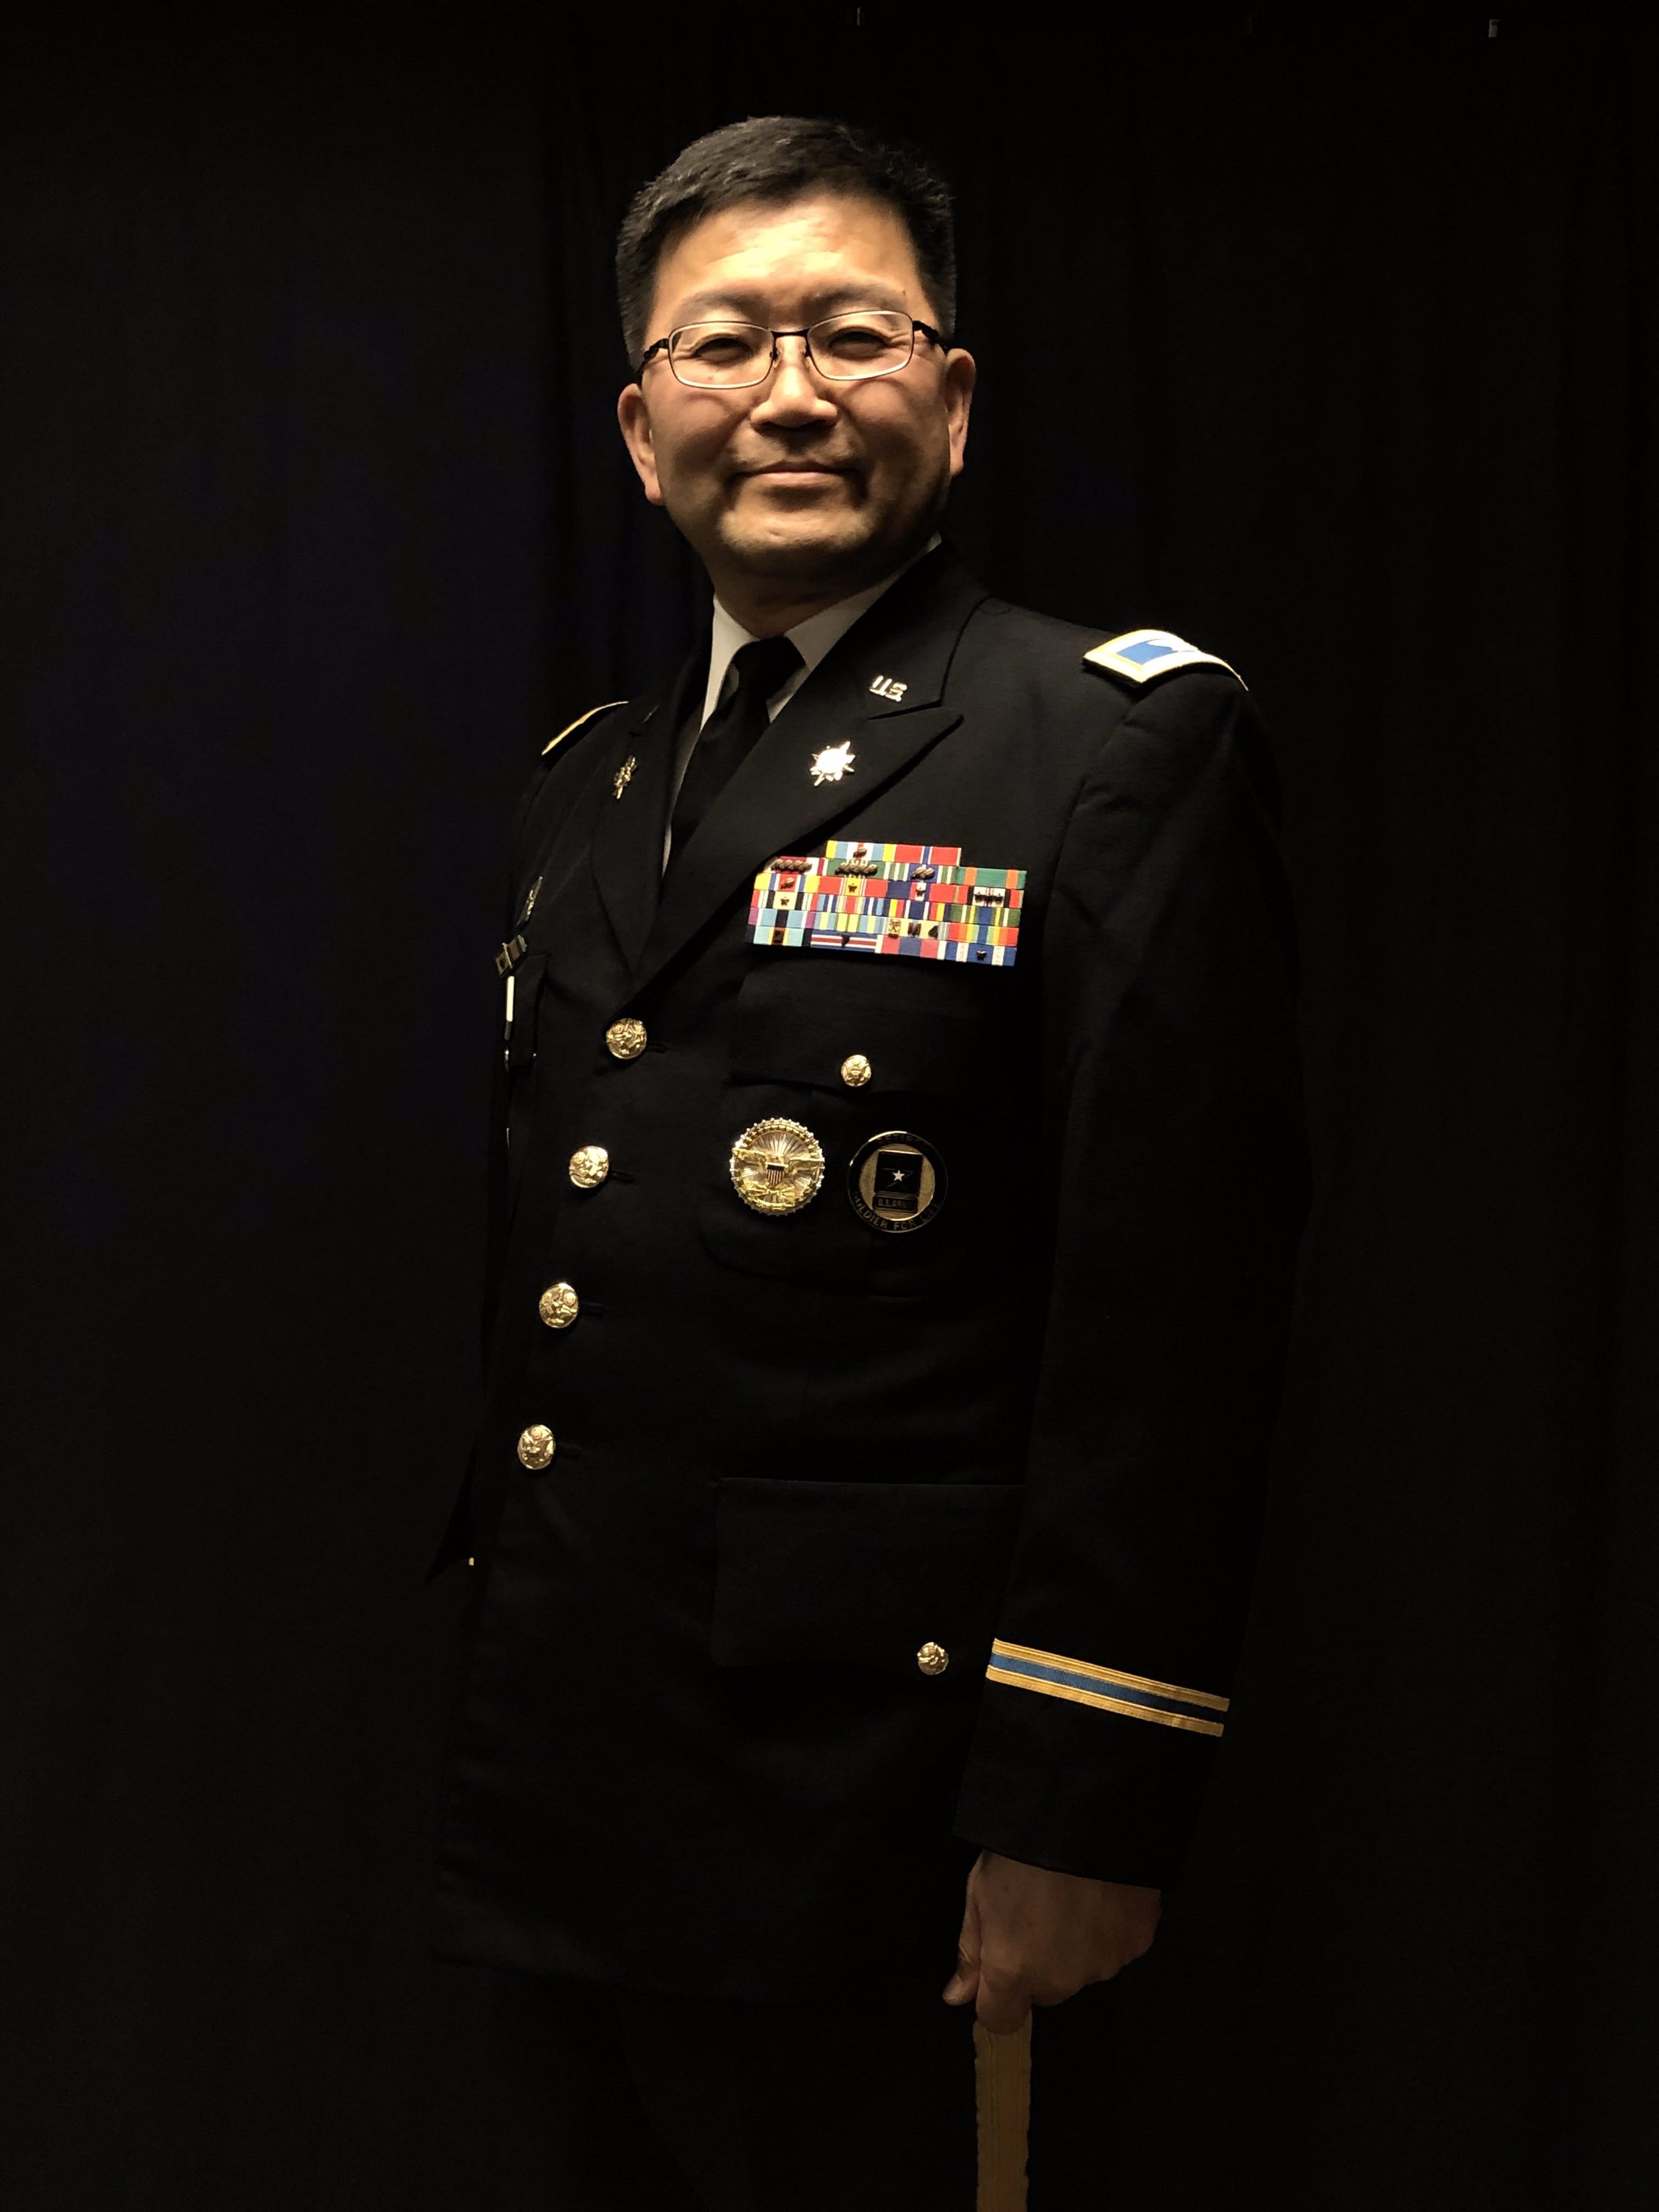 George Ishikata